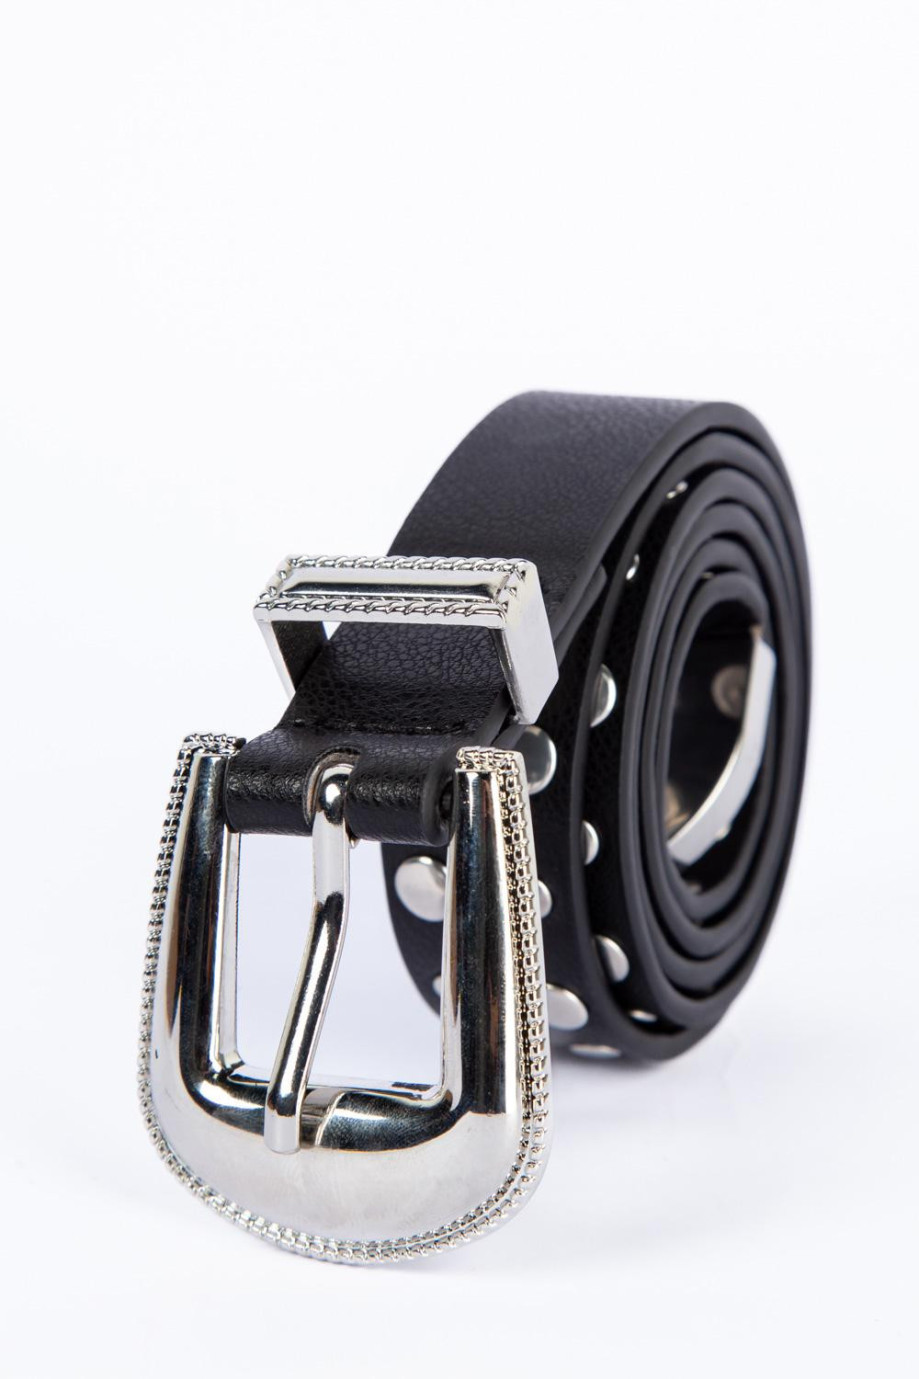 Cinturón negro con hebilla plateada y taches metálicos decorativos